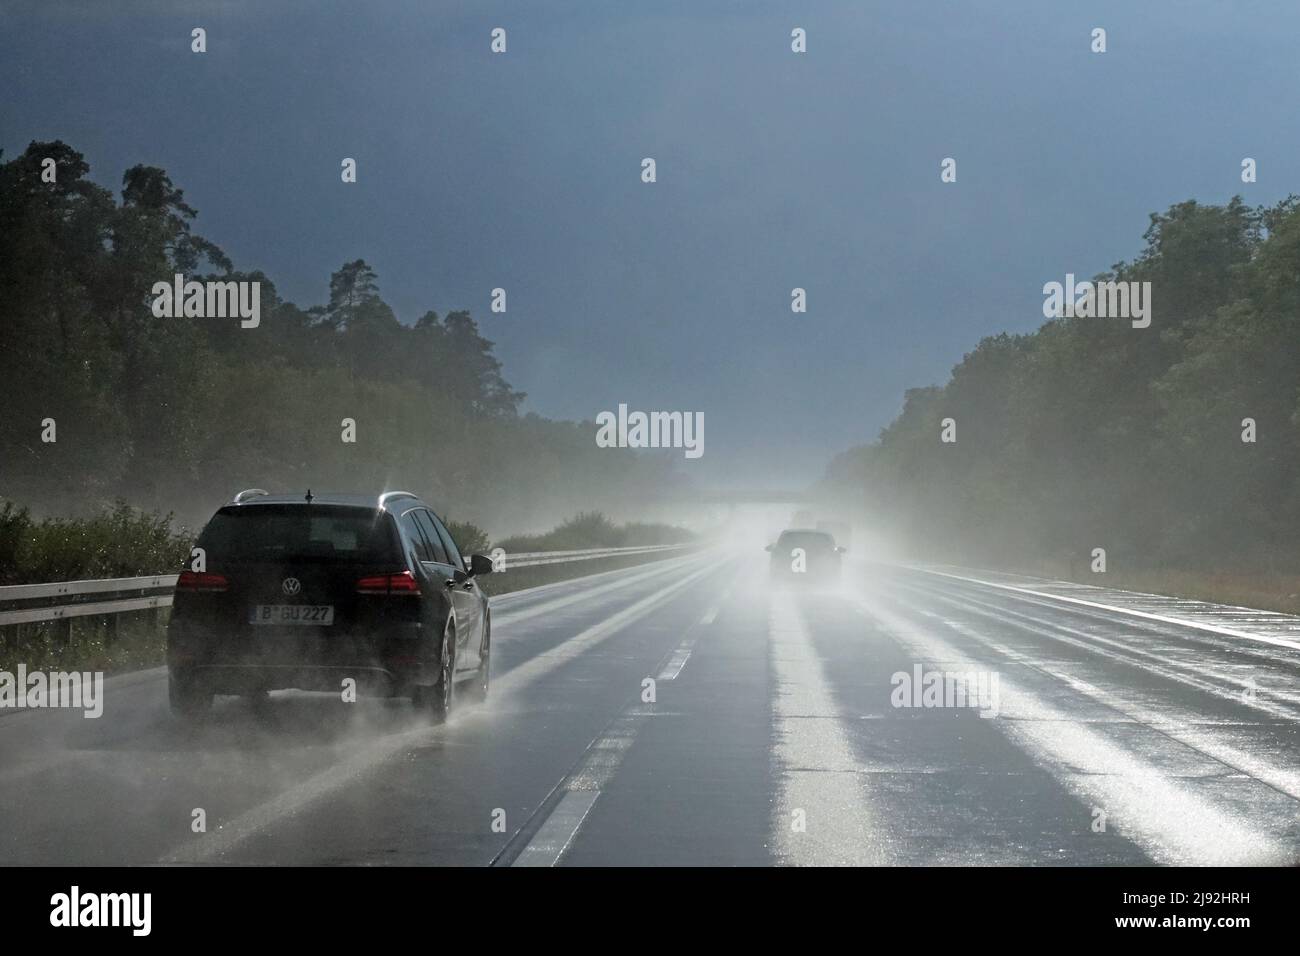 12.07.2019, Burg, Sajonia-Anhalt, Alemania - Pobre visibilidad en la carretera cuando llueve. 00S190712D114CAROEX.JPG [VERSIÓN DEL MODELO: NO, VERSIÓN DE PROPIEDAD: Foto de stock